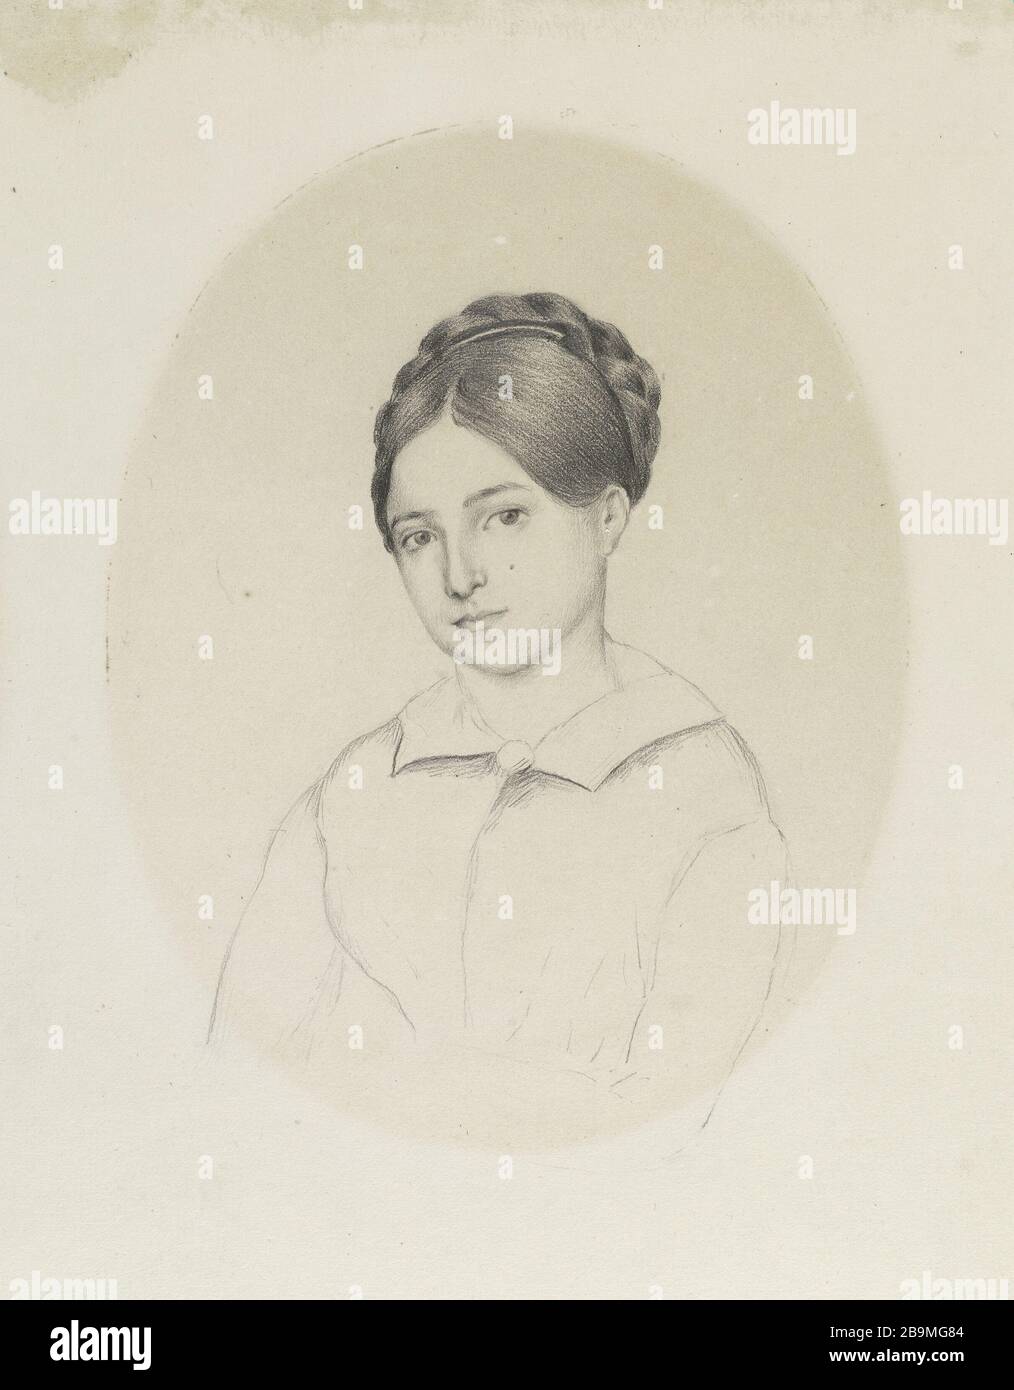 LEOPOLDINE Madame Hugo. 'Léopoldine'. Crayon de graphite sur papier. 1843. Paris, Maison de Victor Hugo. Stock Photo